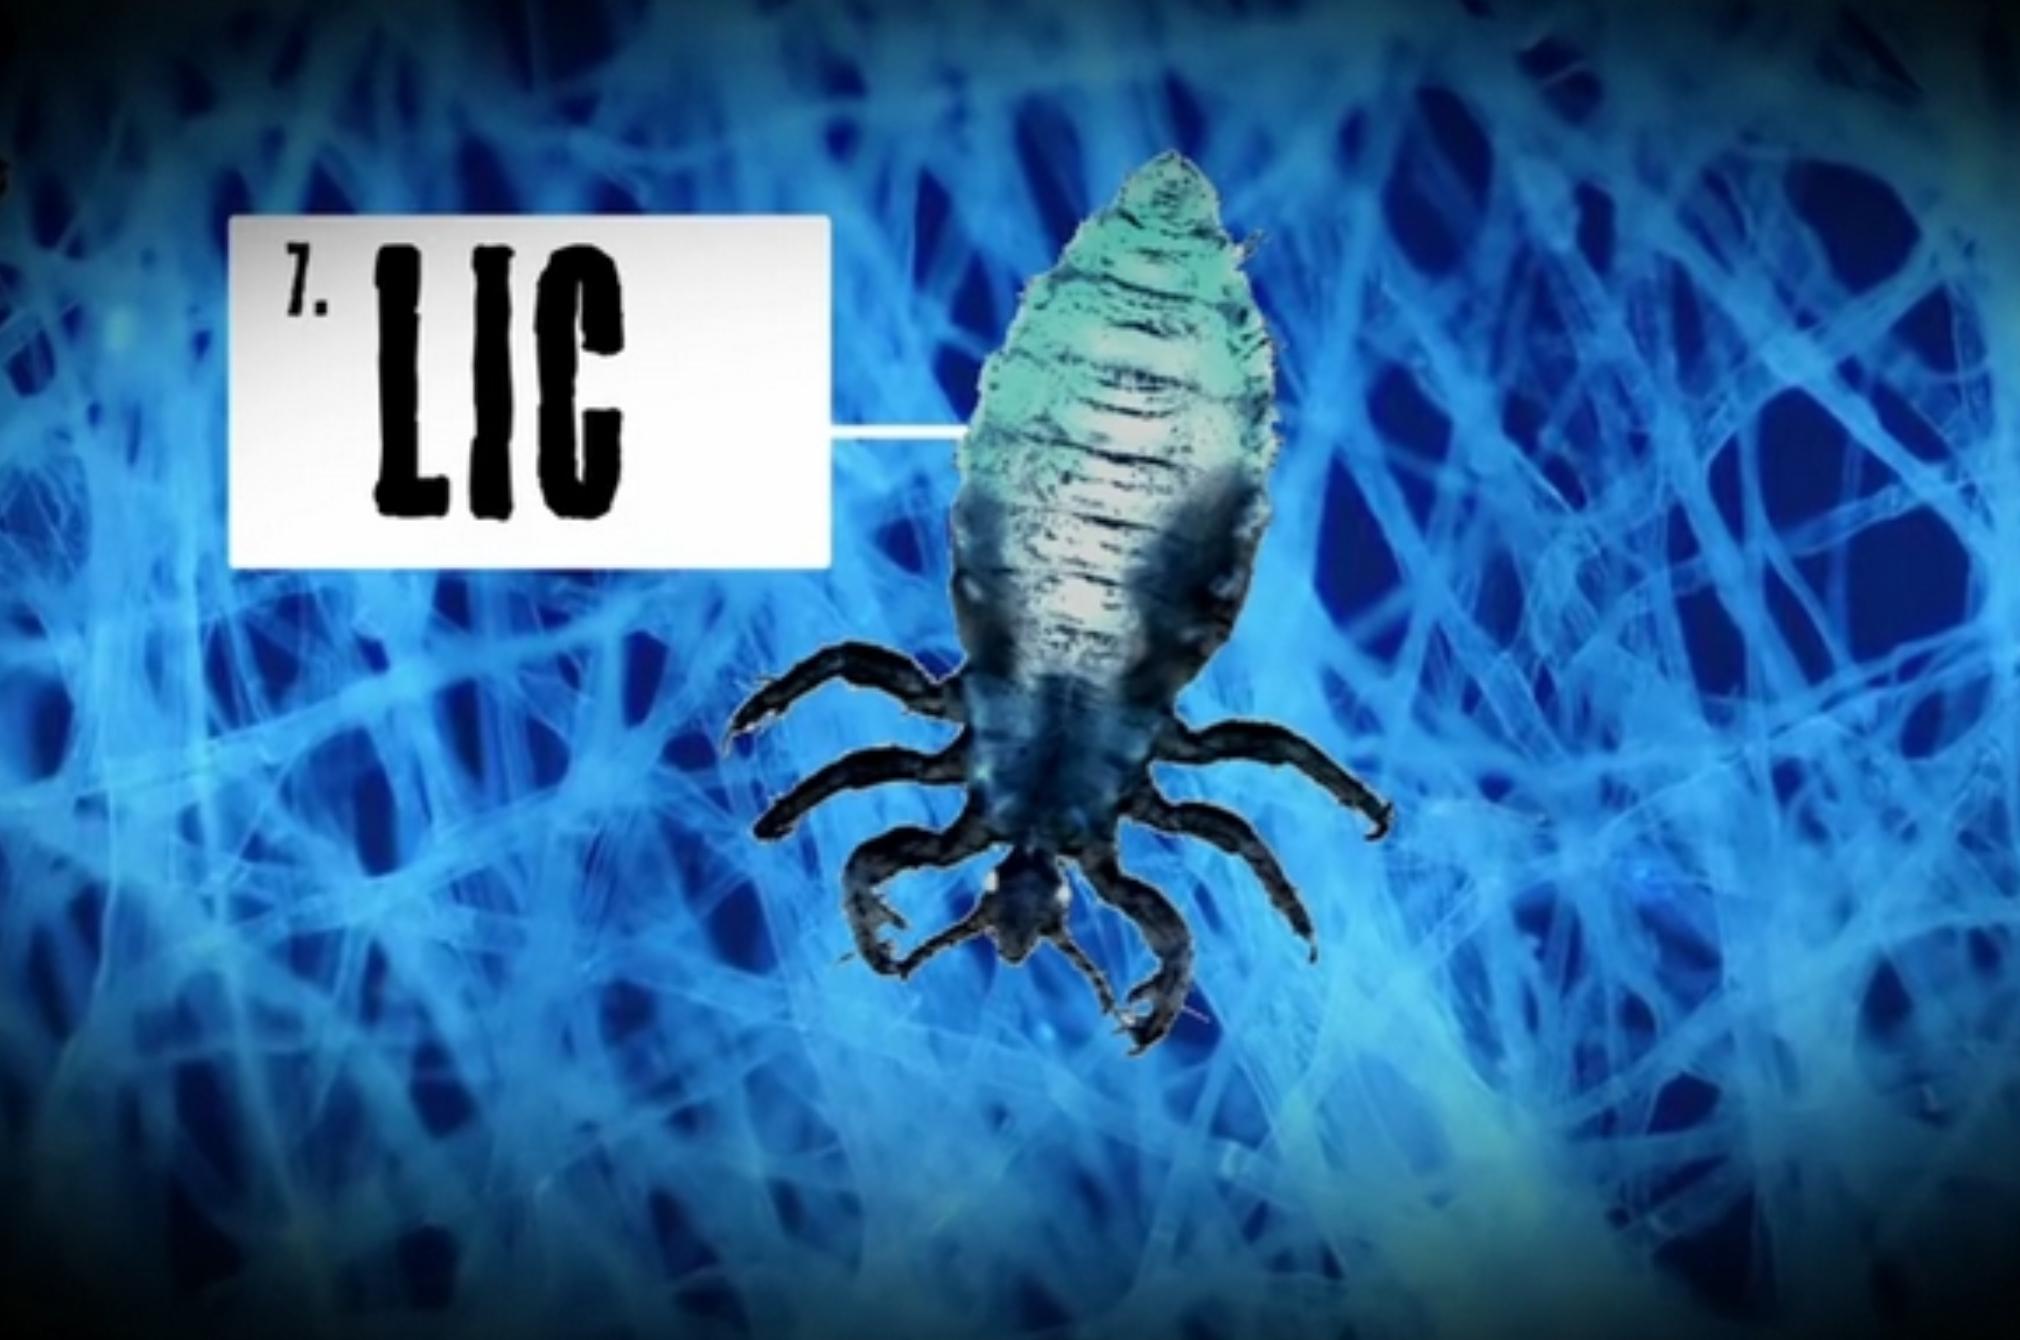 Εκτός από τα ακάρεα αυτά είναι τα επικίνδυνα έντομα και όχι μόνο που κρύβονται στο στρώμα σου: Τσιμπάν δηλητηριάζουν και απειλούν την υγεία σου